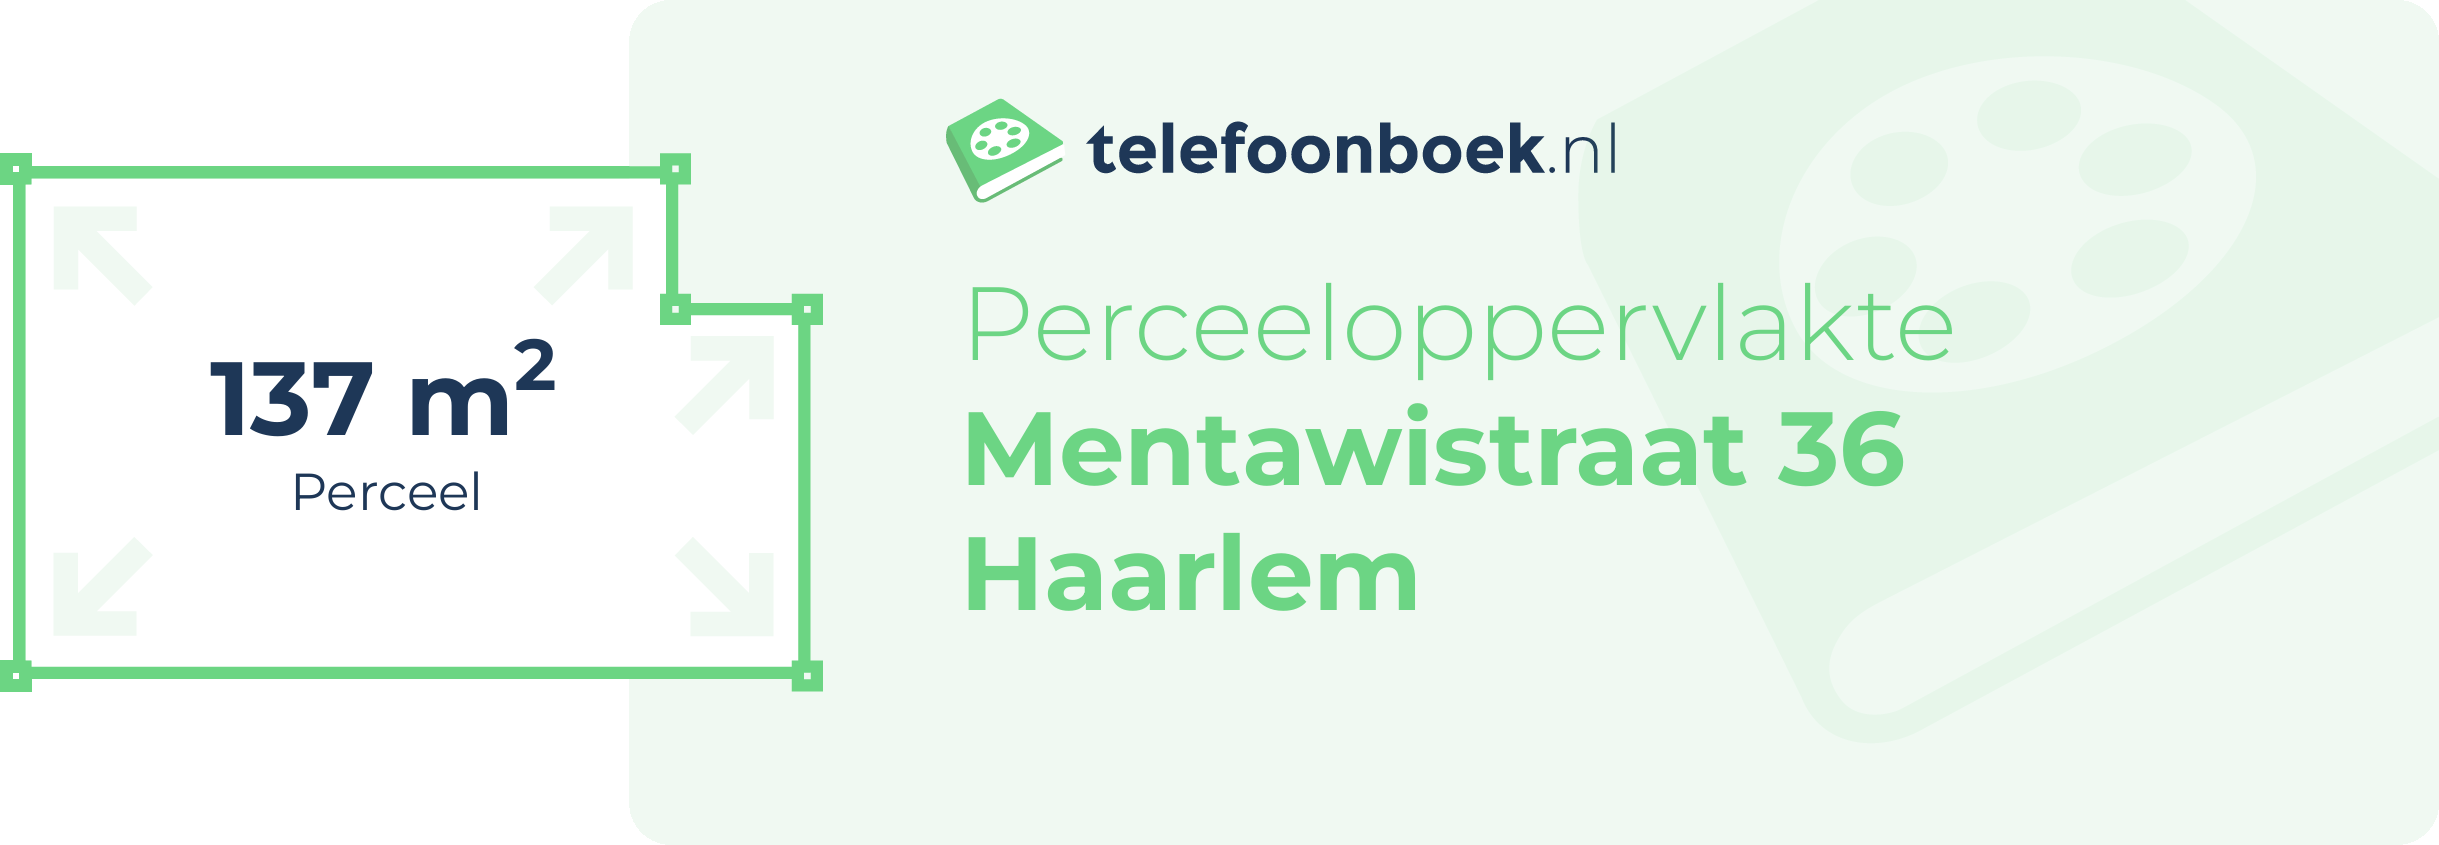 Perceeloppervlakte Mentawistraat 36 Haarlem